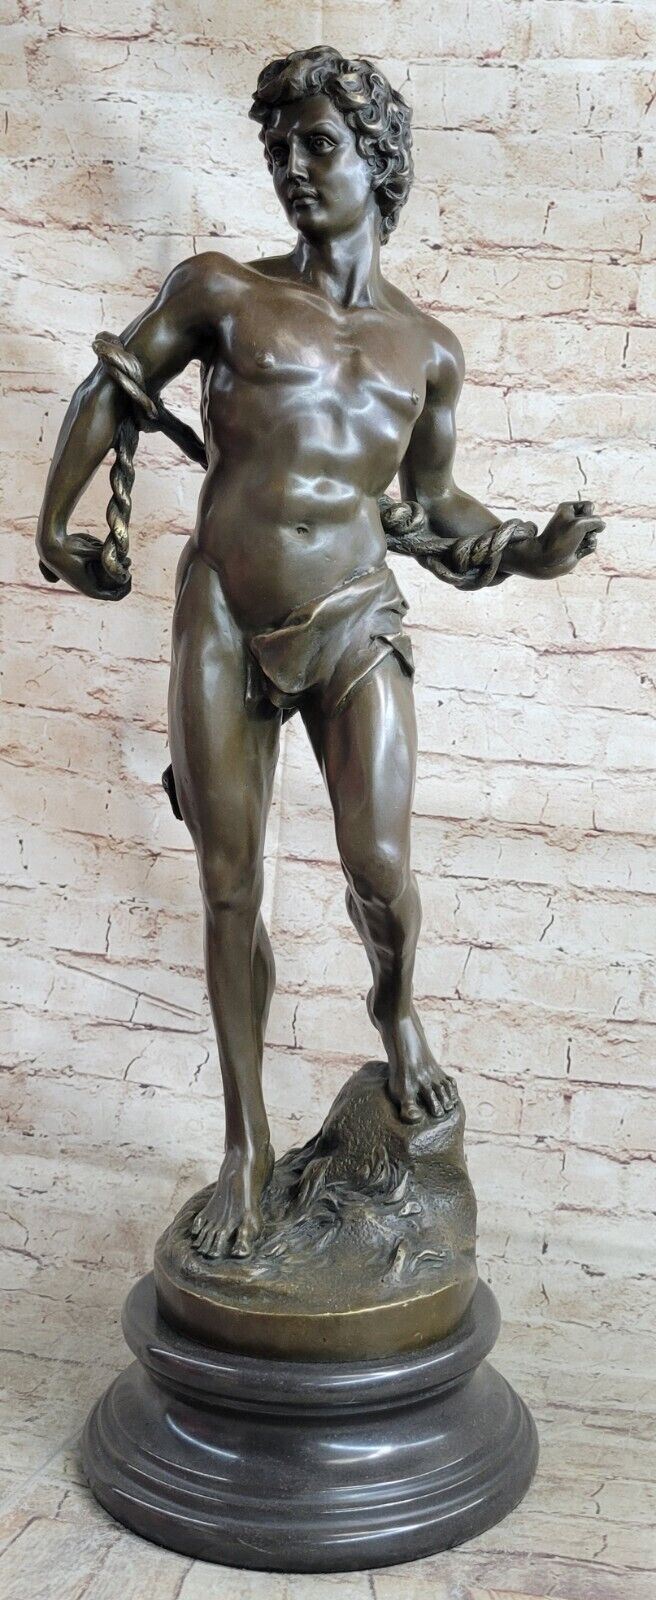 Nude Muscular Man Decor Bronze Sculpture Handmade Figure Hot Cast Handcrafted Ar